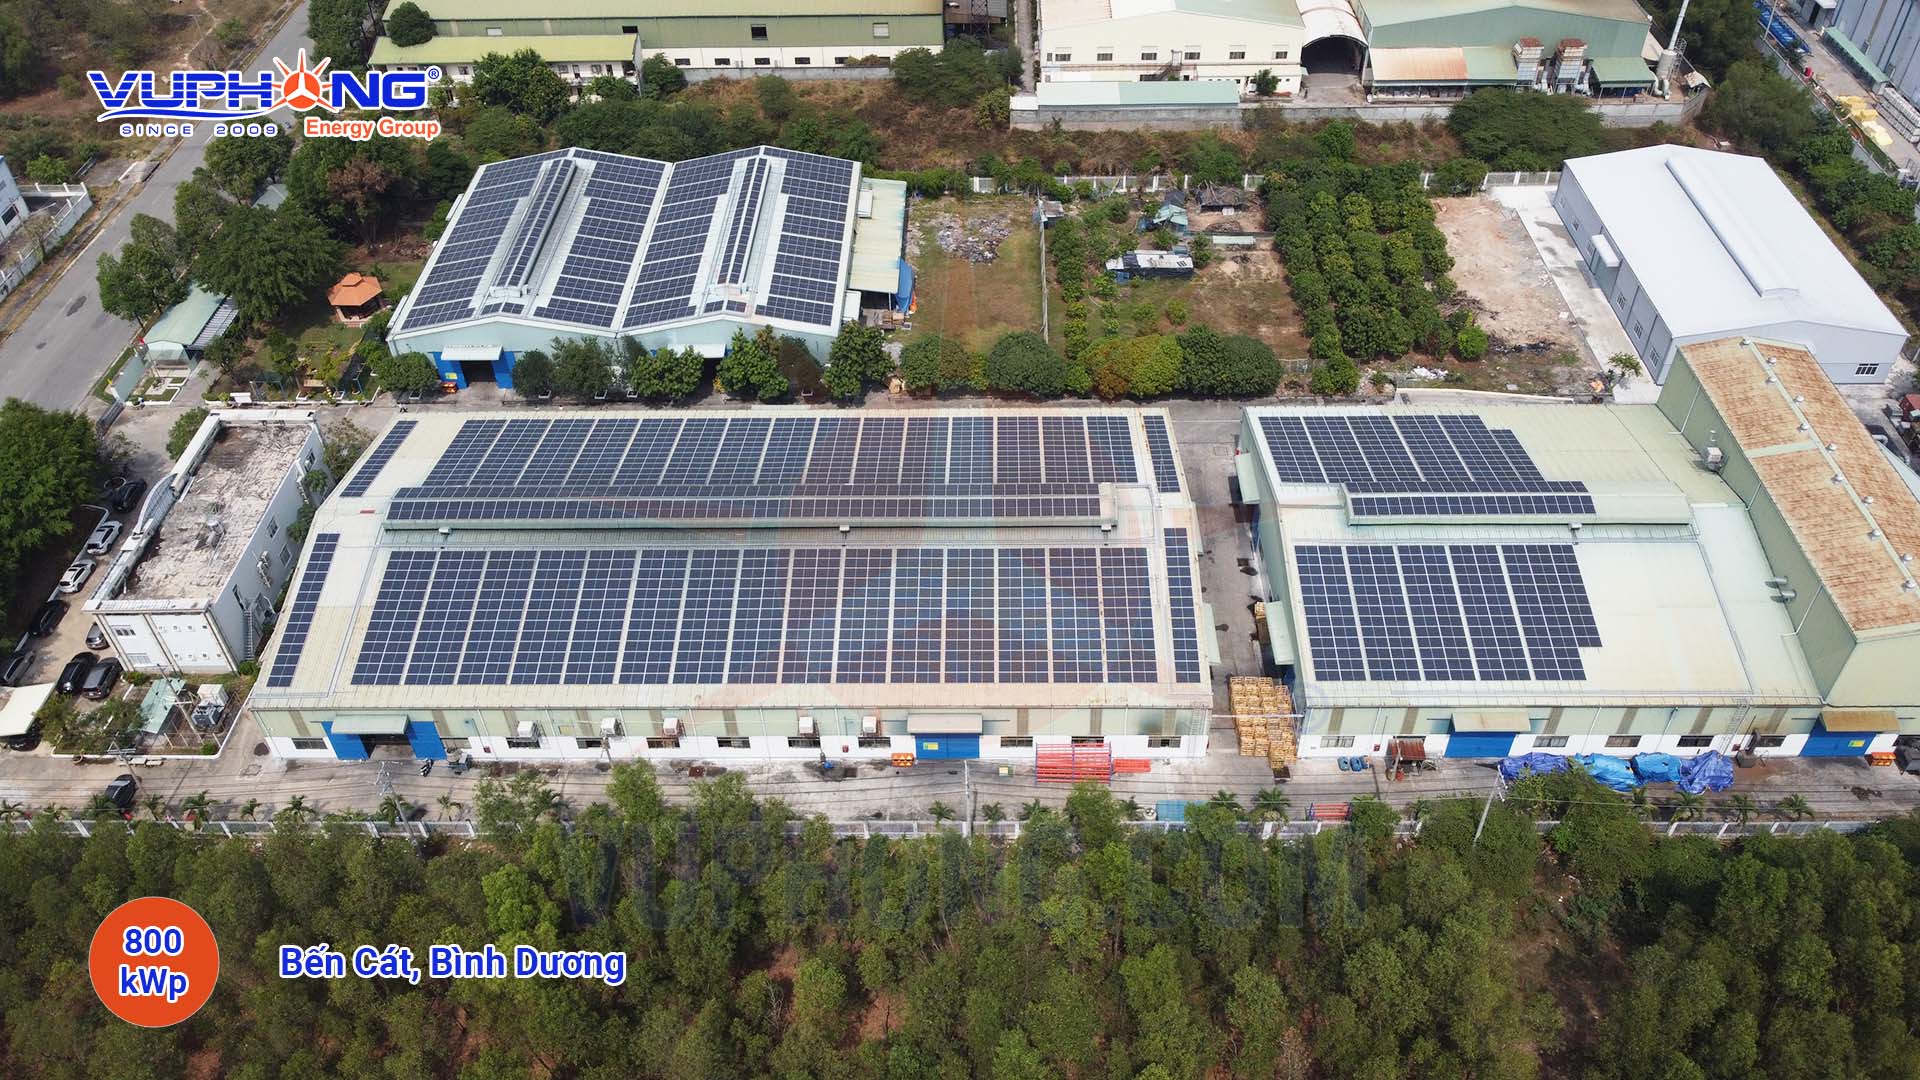 Hệ thống Điện mặt trời 1 MWp Bến Cát, Bình Dương - Công Ty Cổ Phần Vũ Phong Energy Group